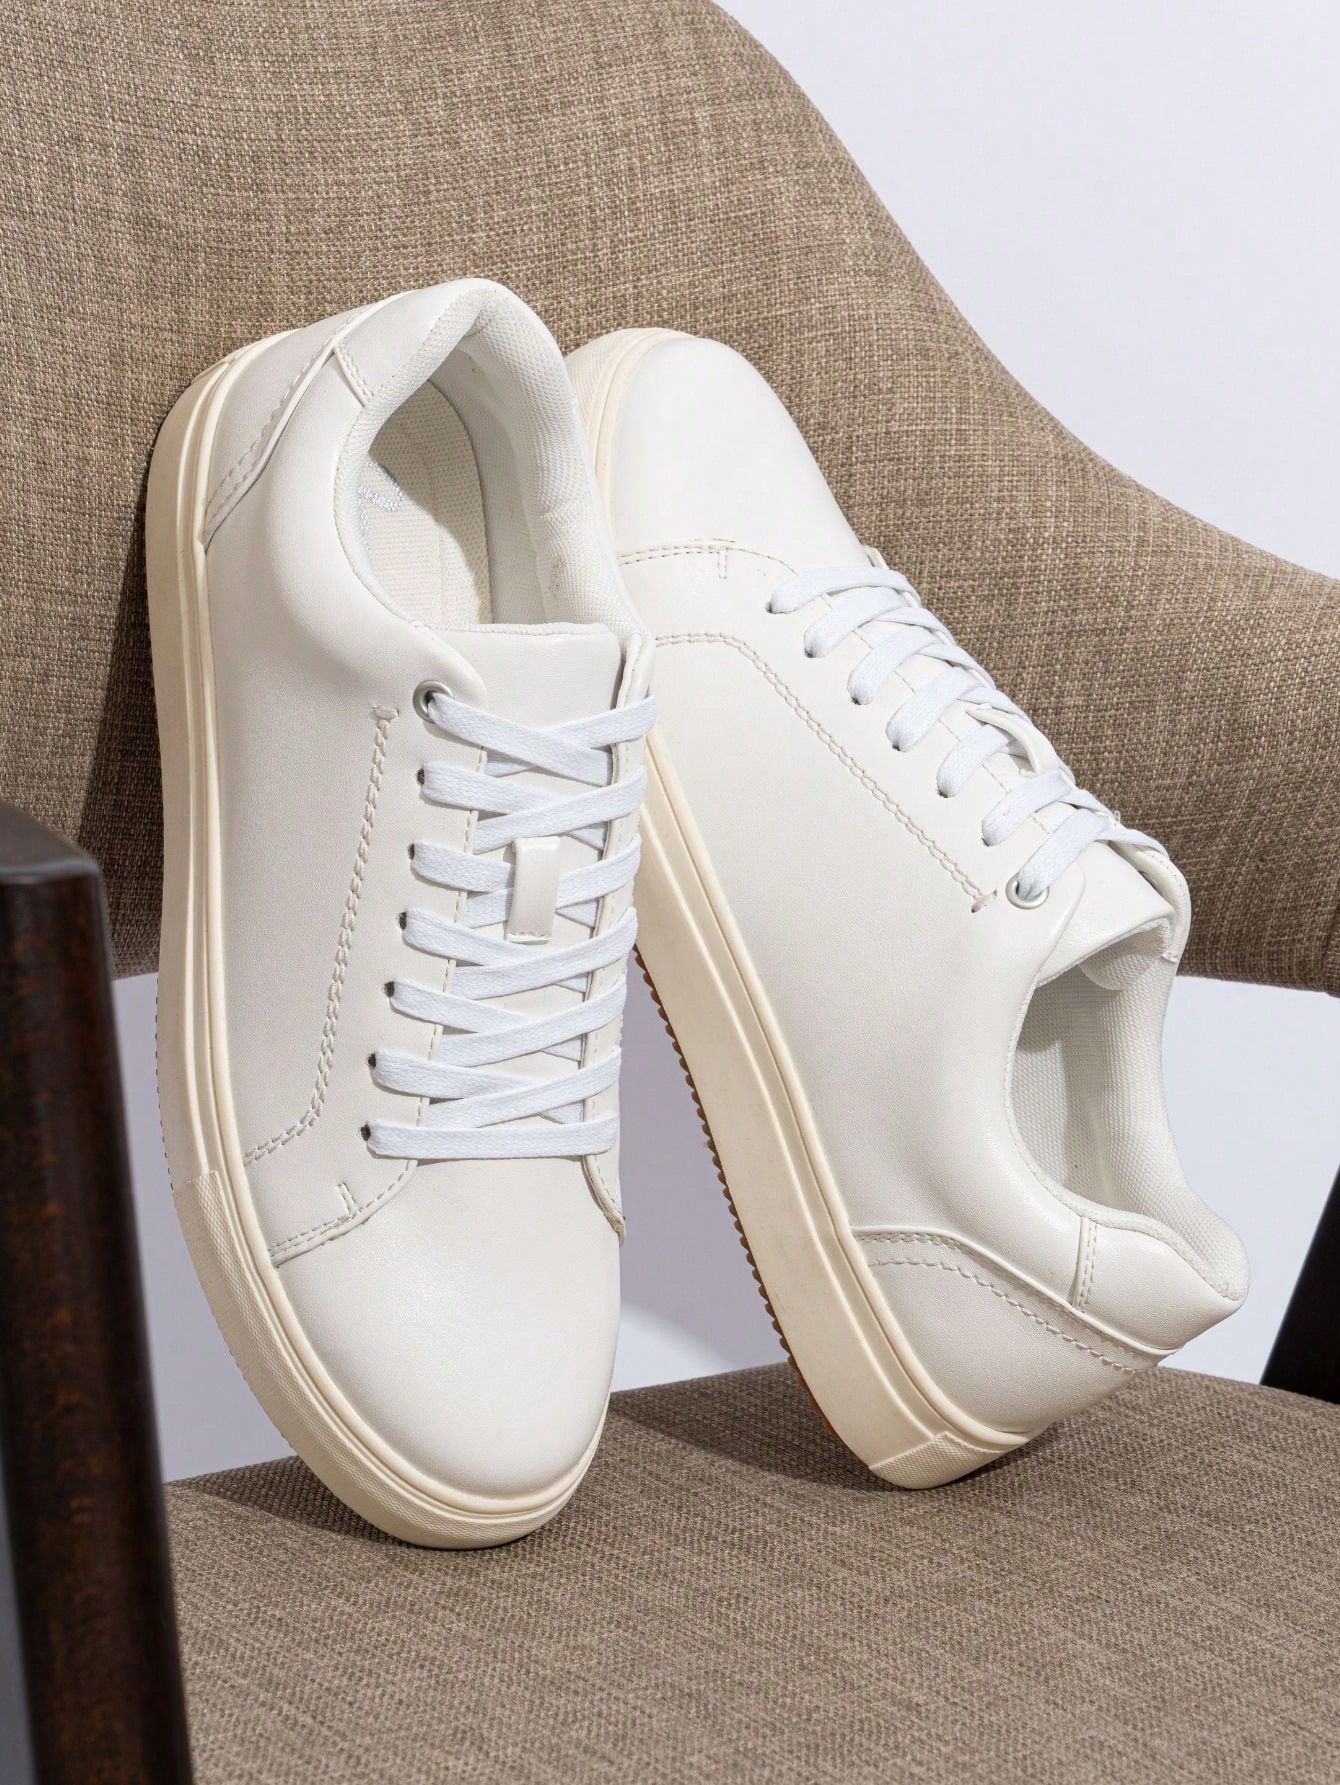 SHOESMALL Мужская повседневная обувь Белые мужские модные кроссовки Деловые классические кроссовки Обувь для скейтбординга, amy5126-белый цена